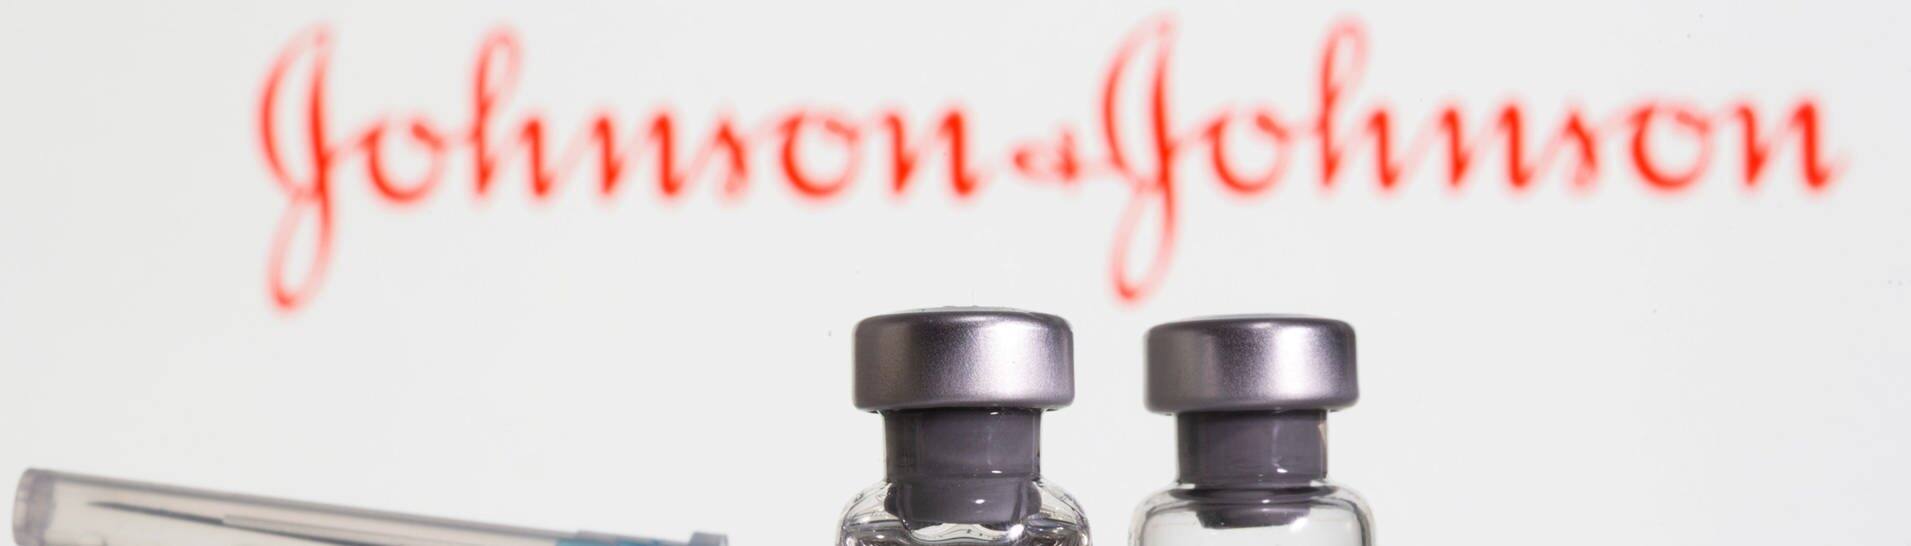 Der neue Impfstoff von Johnson & Johnson dürfte bald zur Verfügung stehen. (Foto: Reuters)